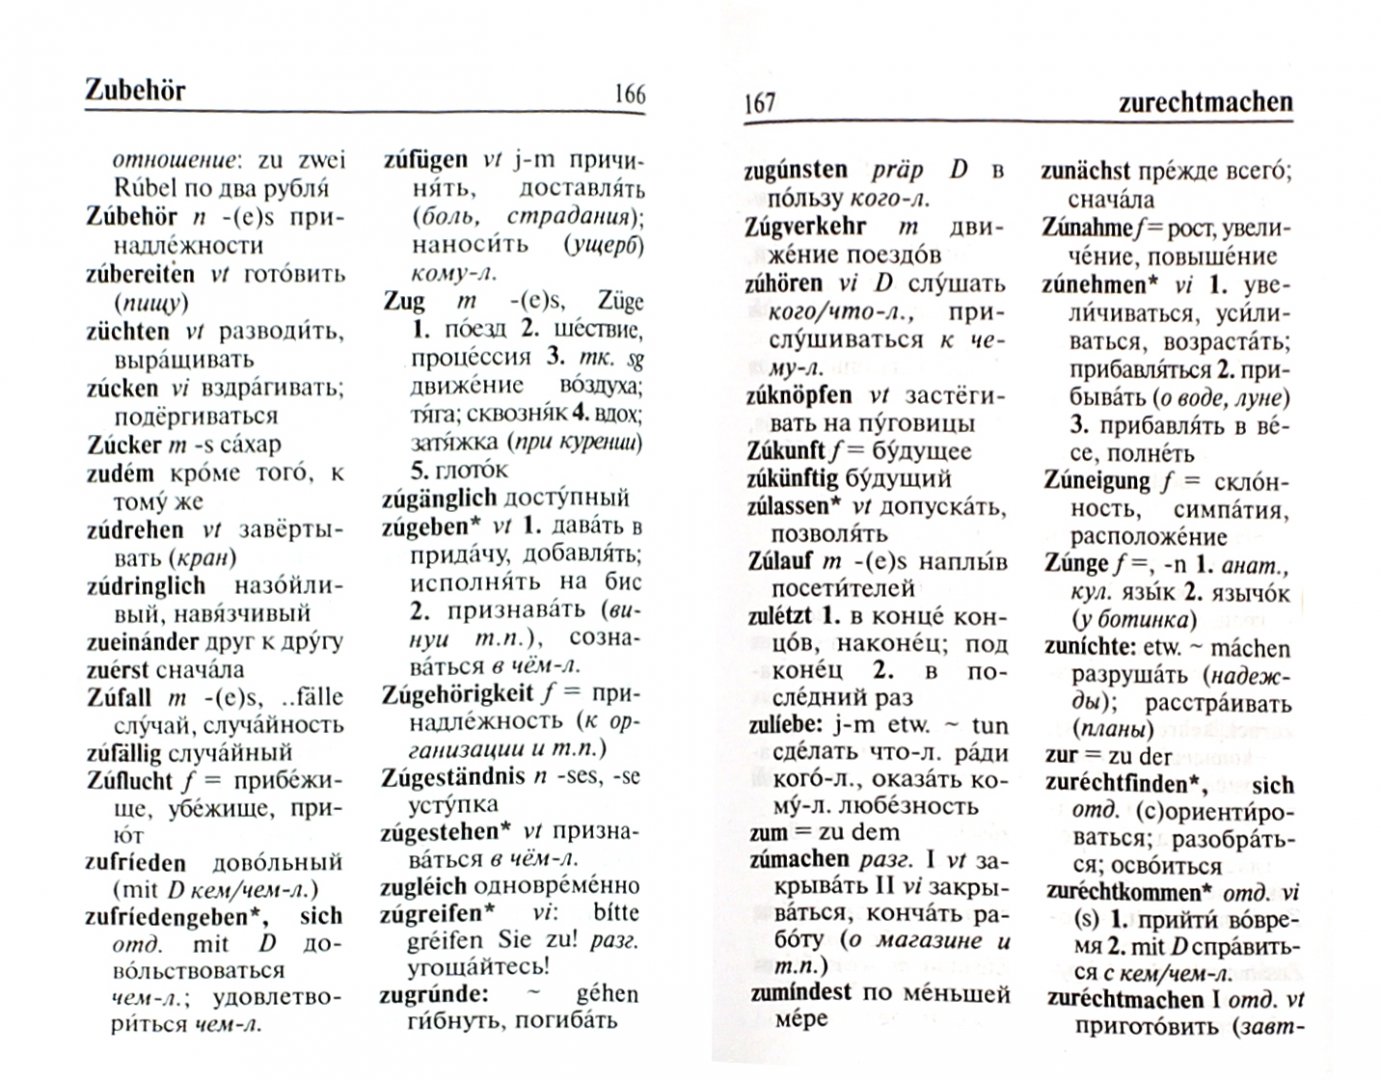 Иллюстрация 1 из 5 для Немецко-русский, русско-немецкий словарь | Лабиринт - книги. Источник: Лабиринт